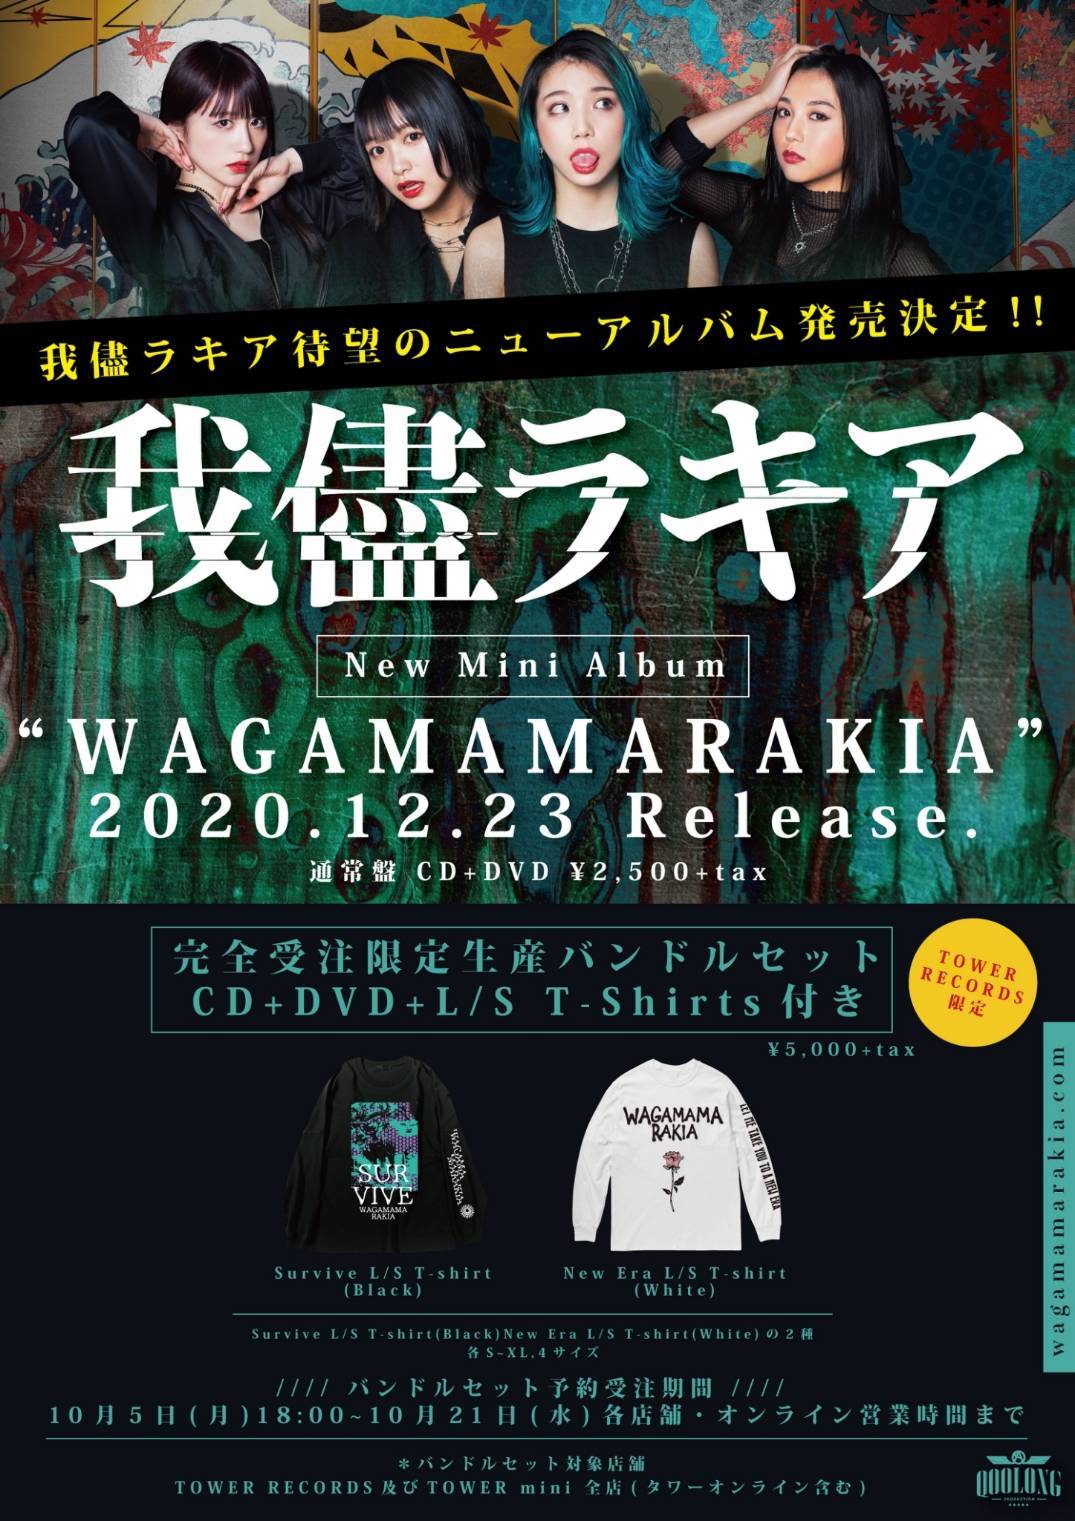 我儘ラキア、新たなステージへの布石 New Mini Album『WAGAMAMARAKIA 